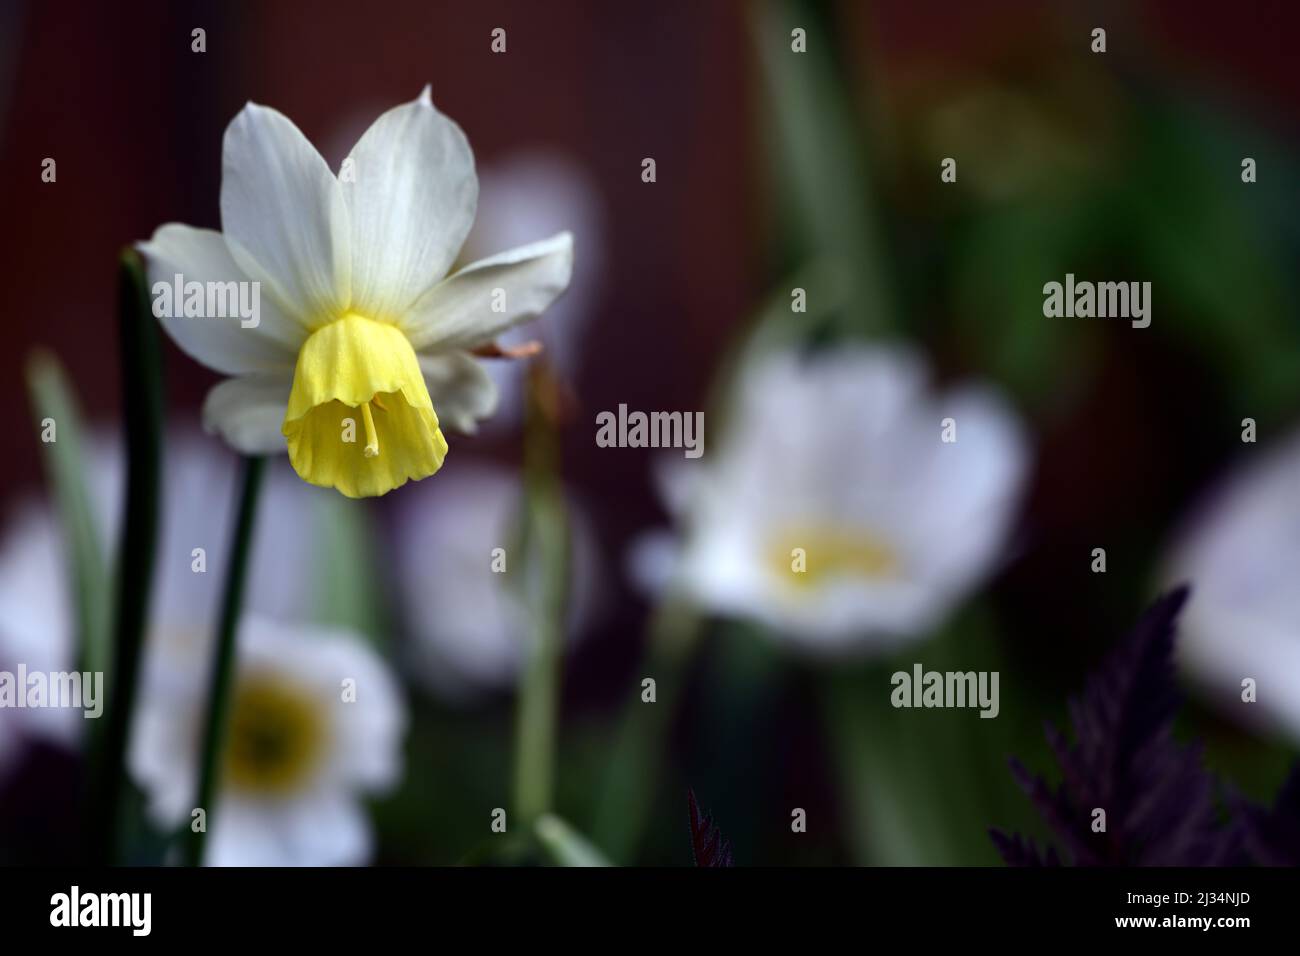 narcissus Segelboot, Miniatur-Narcissus, Miniatur-Narcissi, hellgelbe und cremeweiße Blüten, blassgelbe Blume, Frühling im Garten, RM floral Stockfoto